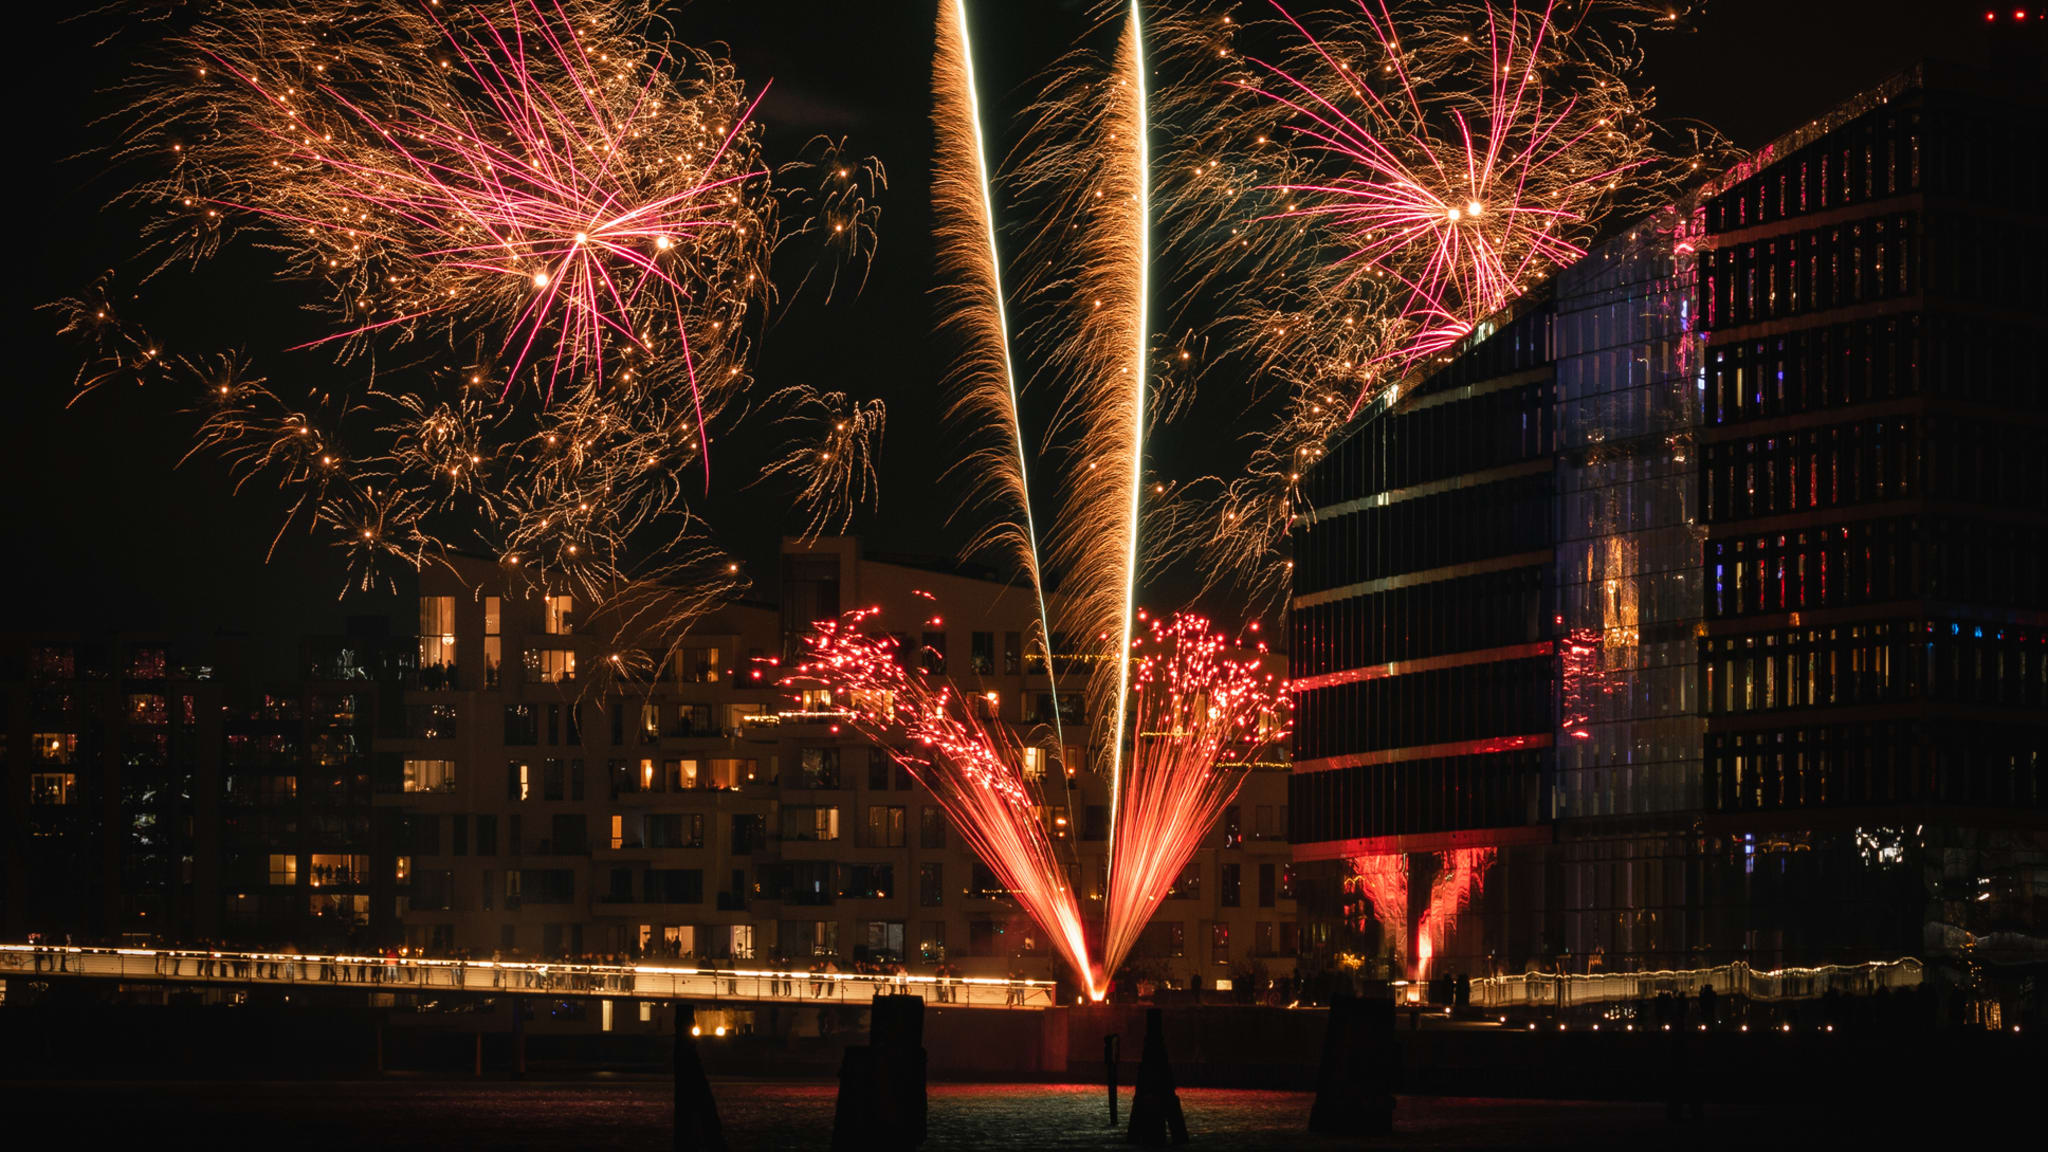 Feuerwerk in Kopenhagen, Dänemark © heino eisner/iStock / Getty Images Plus via Getty Images